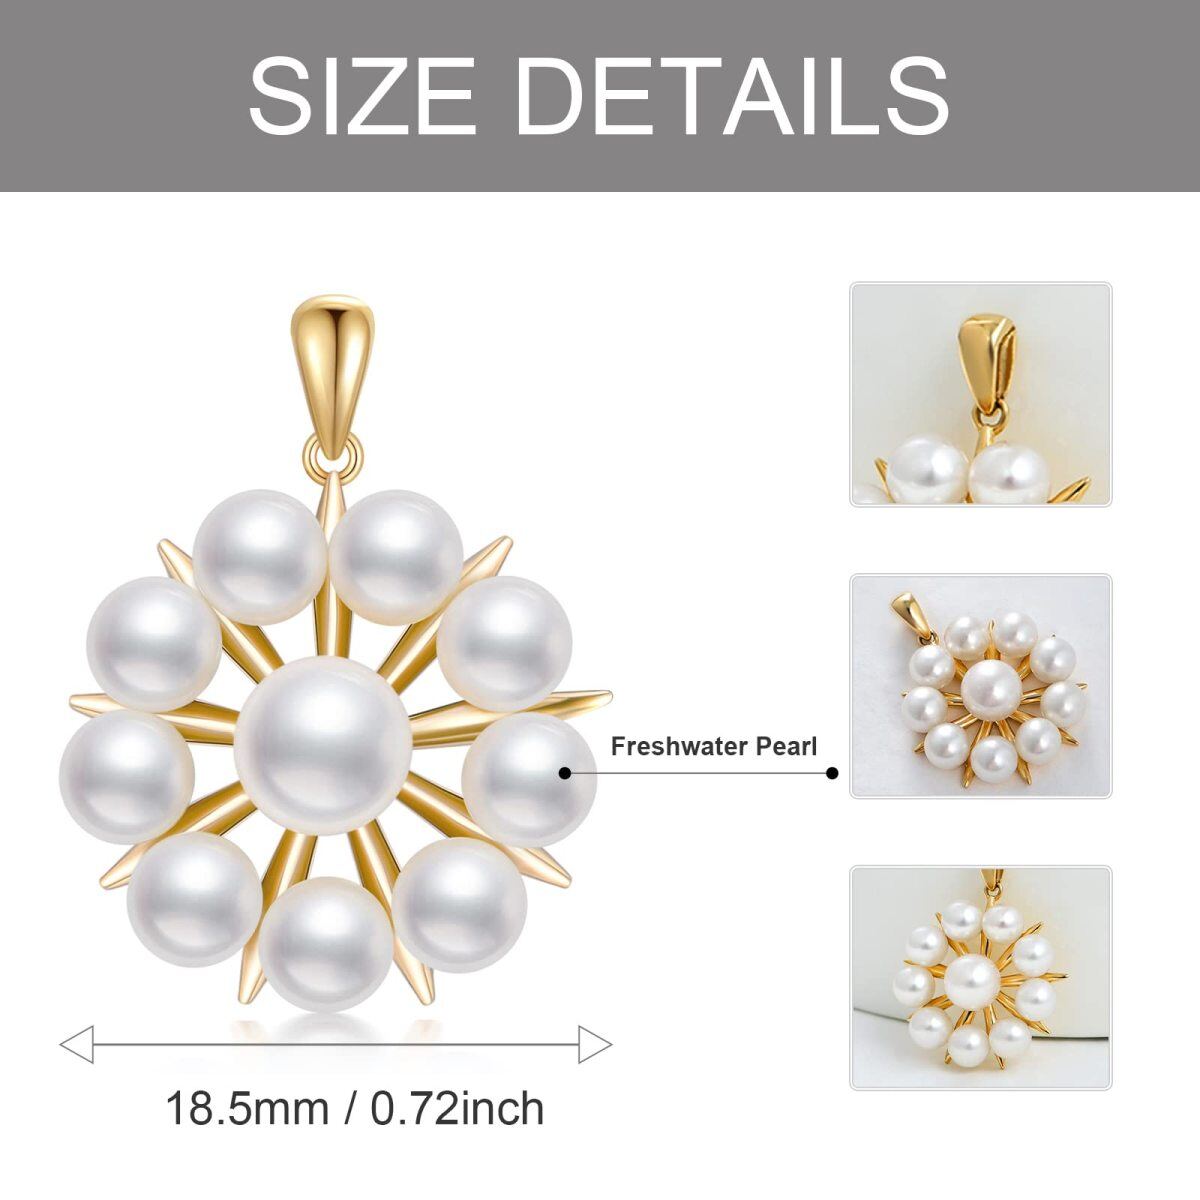 Colgante de oro de 14 quilates con forma circular de perla-5